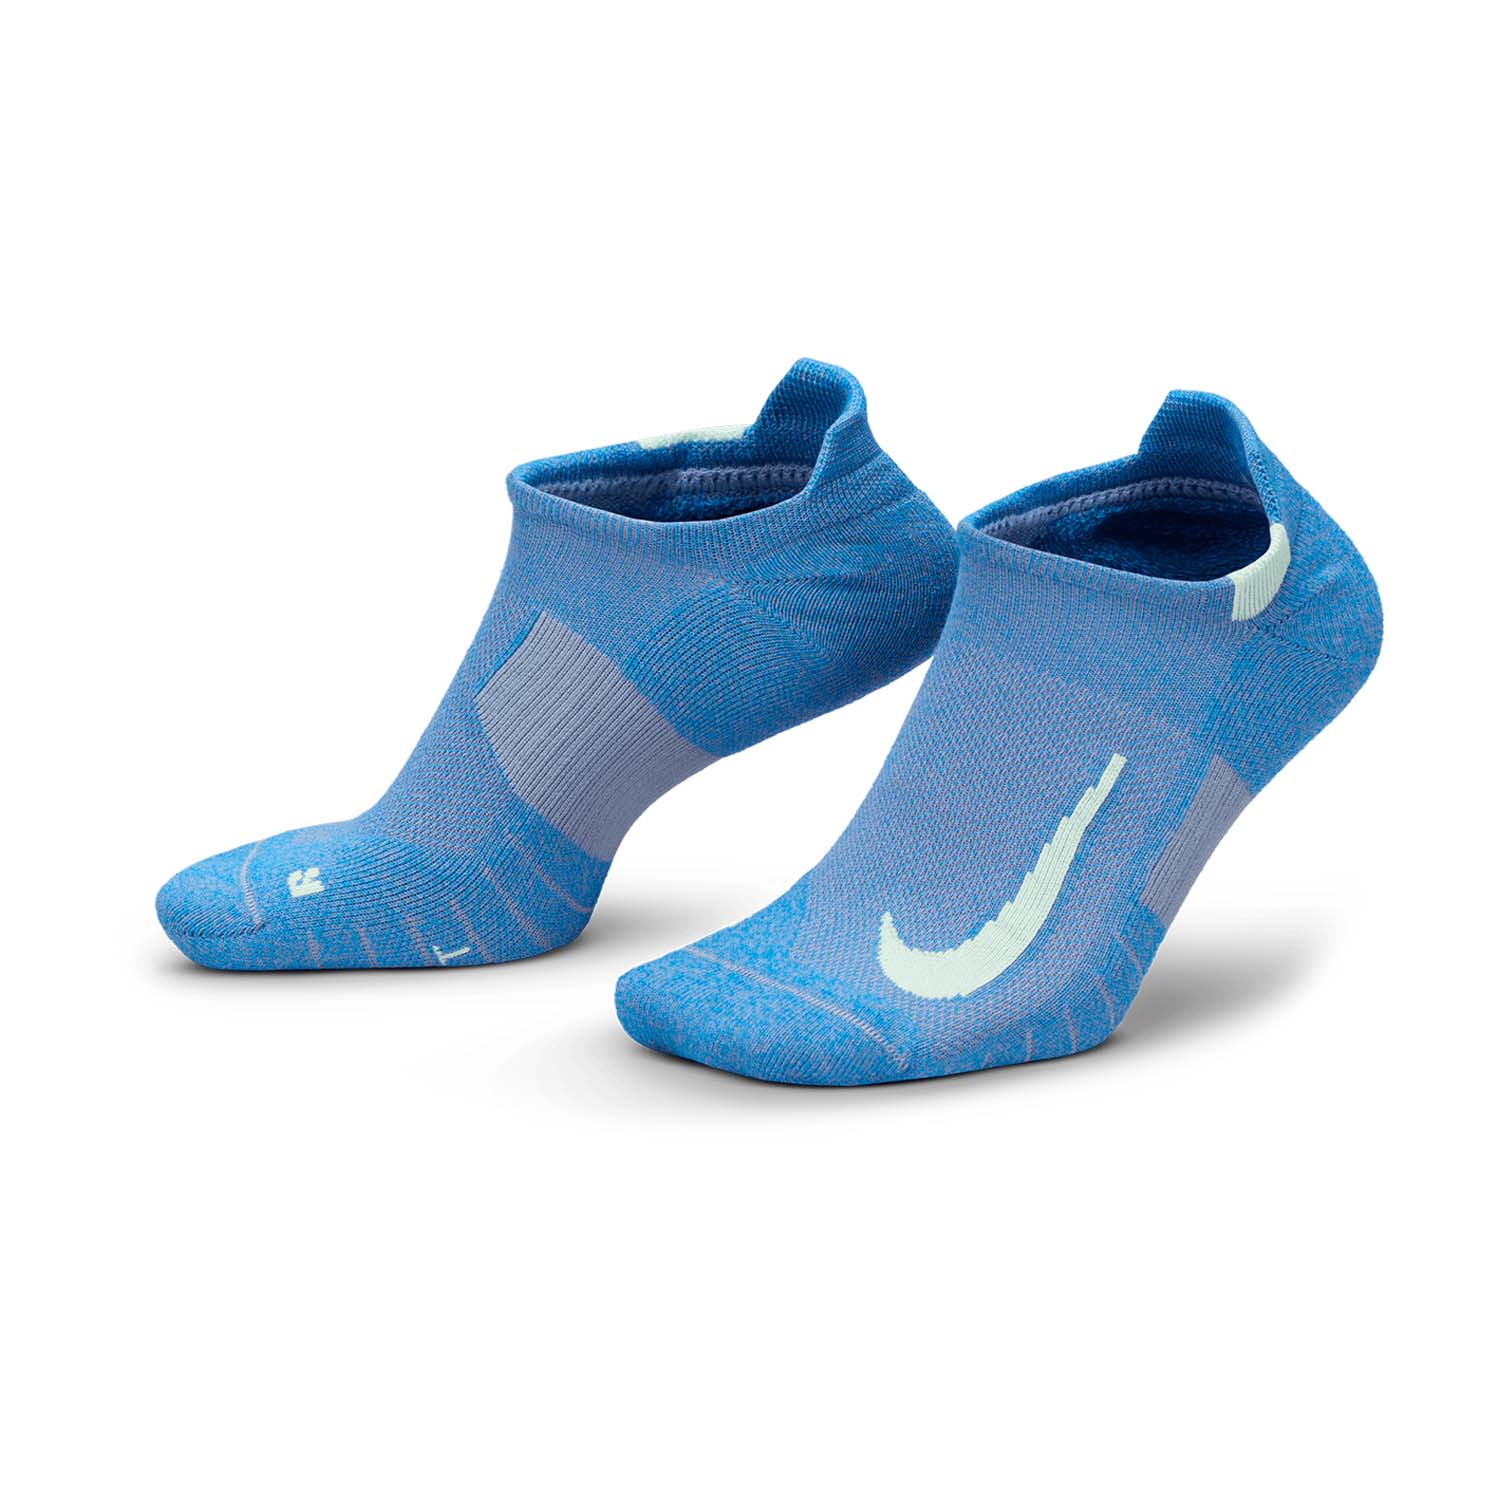 Nike Multiplier x 2 Calze - Light Blue/White